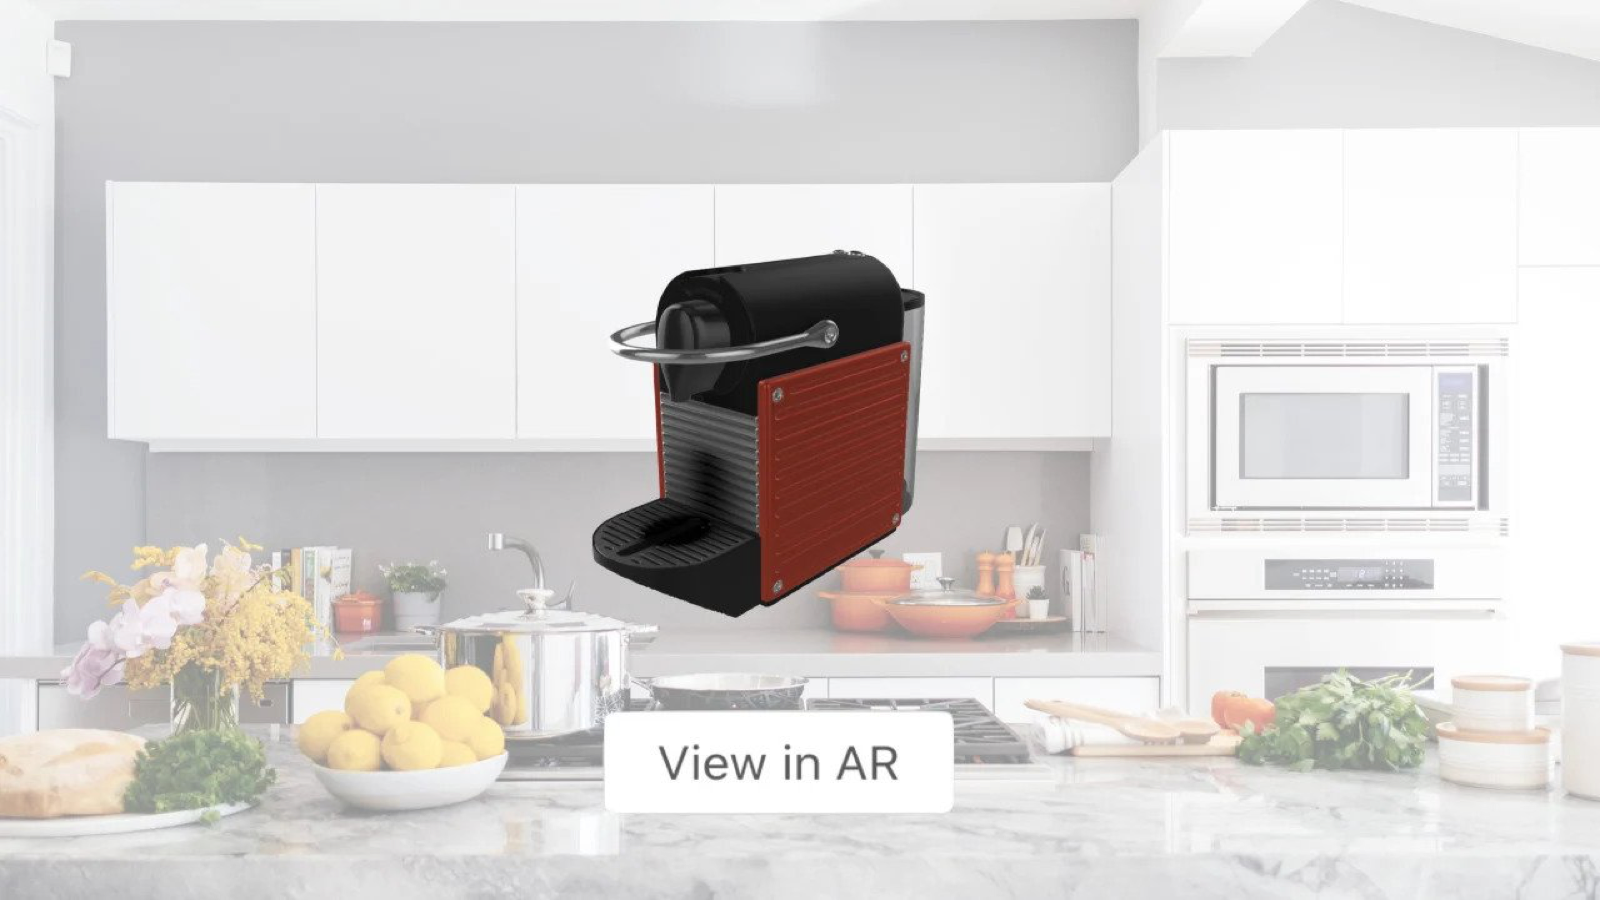 Permite a los compradores colocar productos en su hogar con AR